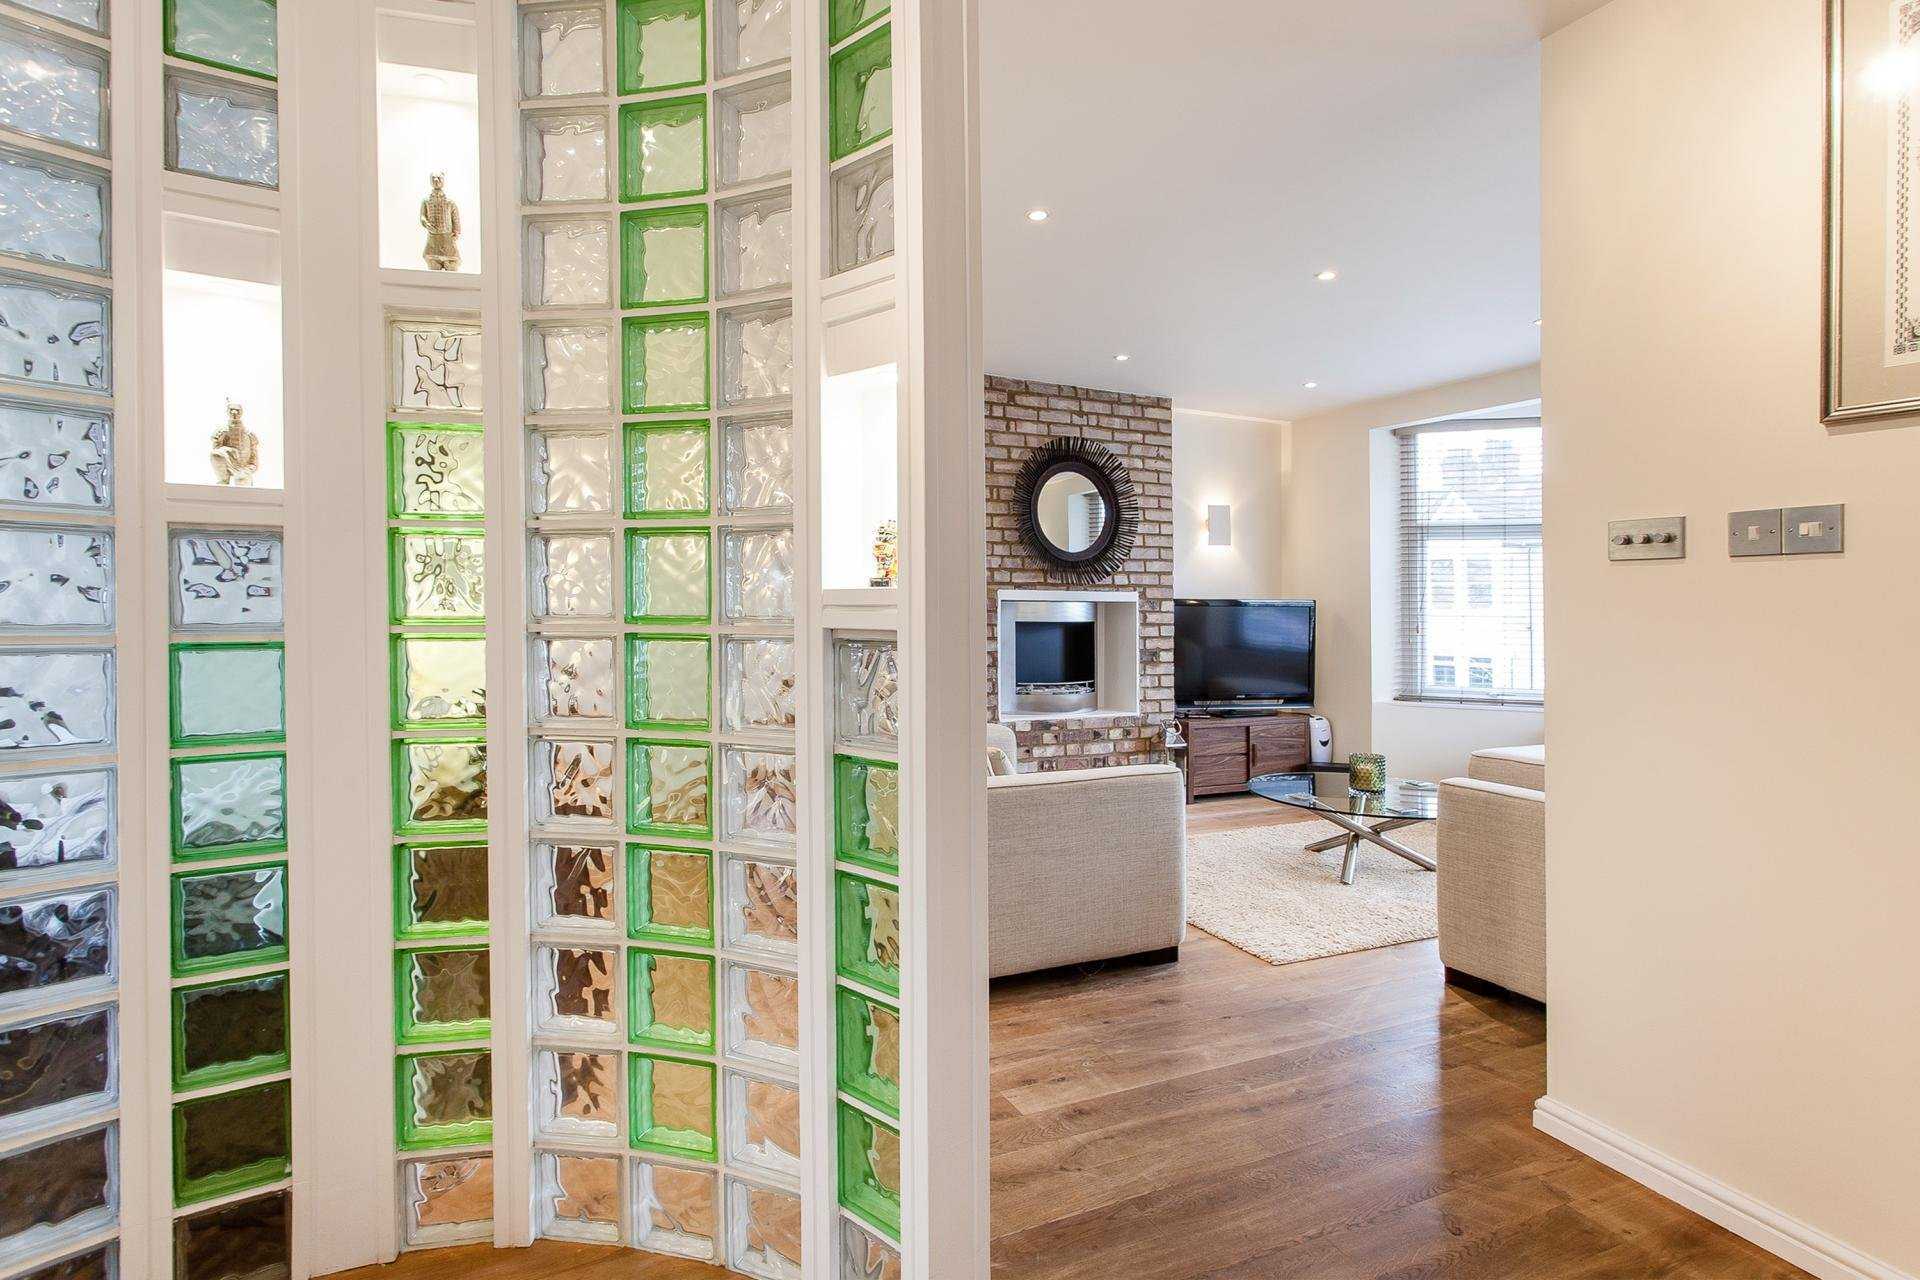 Что такое стеклянные блоки в интерьере, фото стеклоблоков в дизайне квартиры, плюсы и минусы блоков-кирпичиков из стекла, советы по использованию